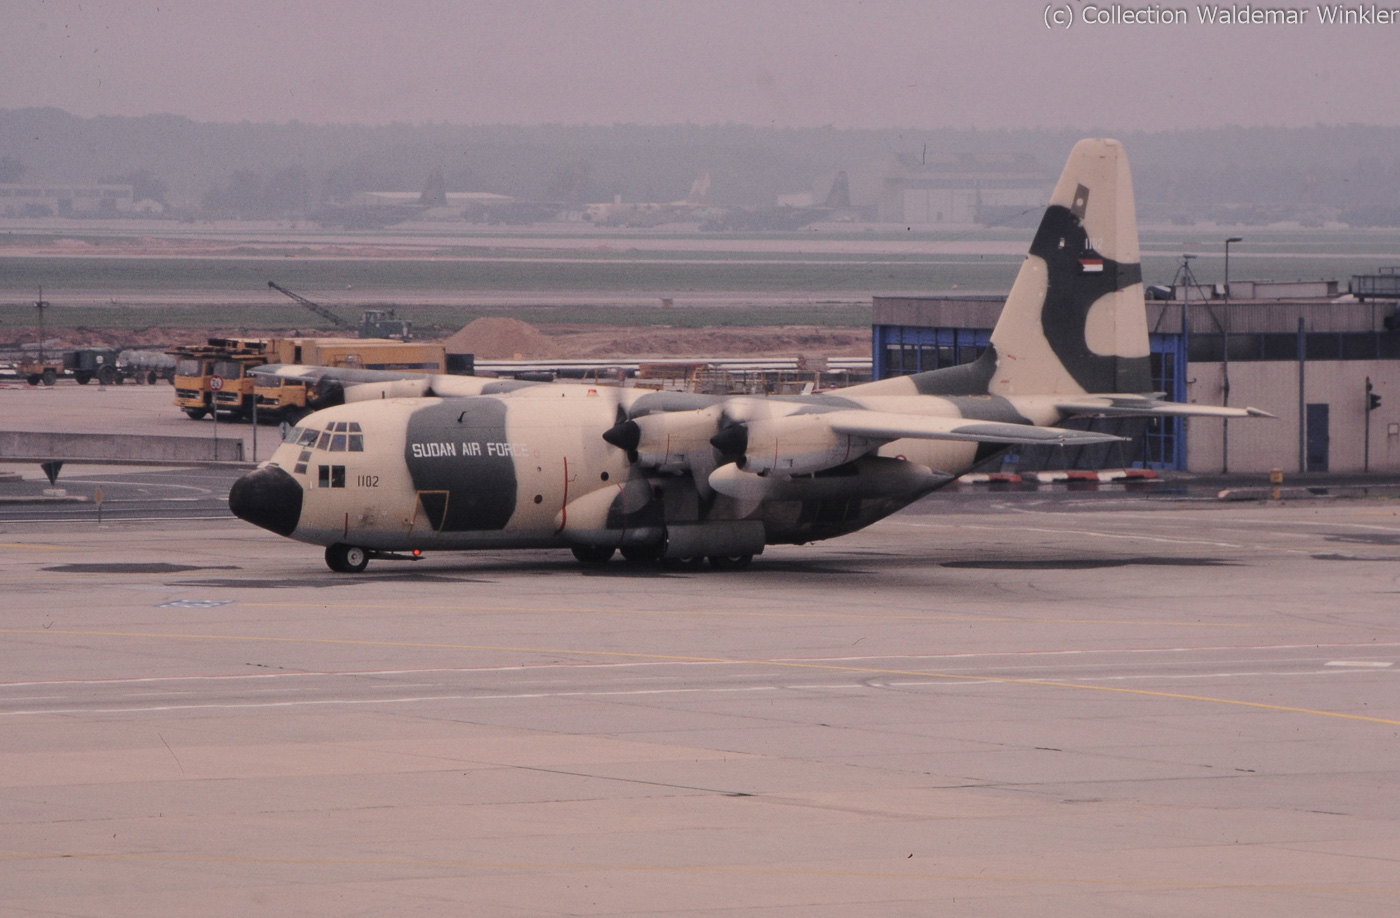 C-130_Hercules_DSC_1754.jpg